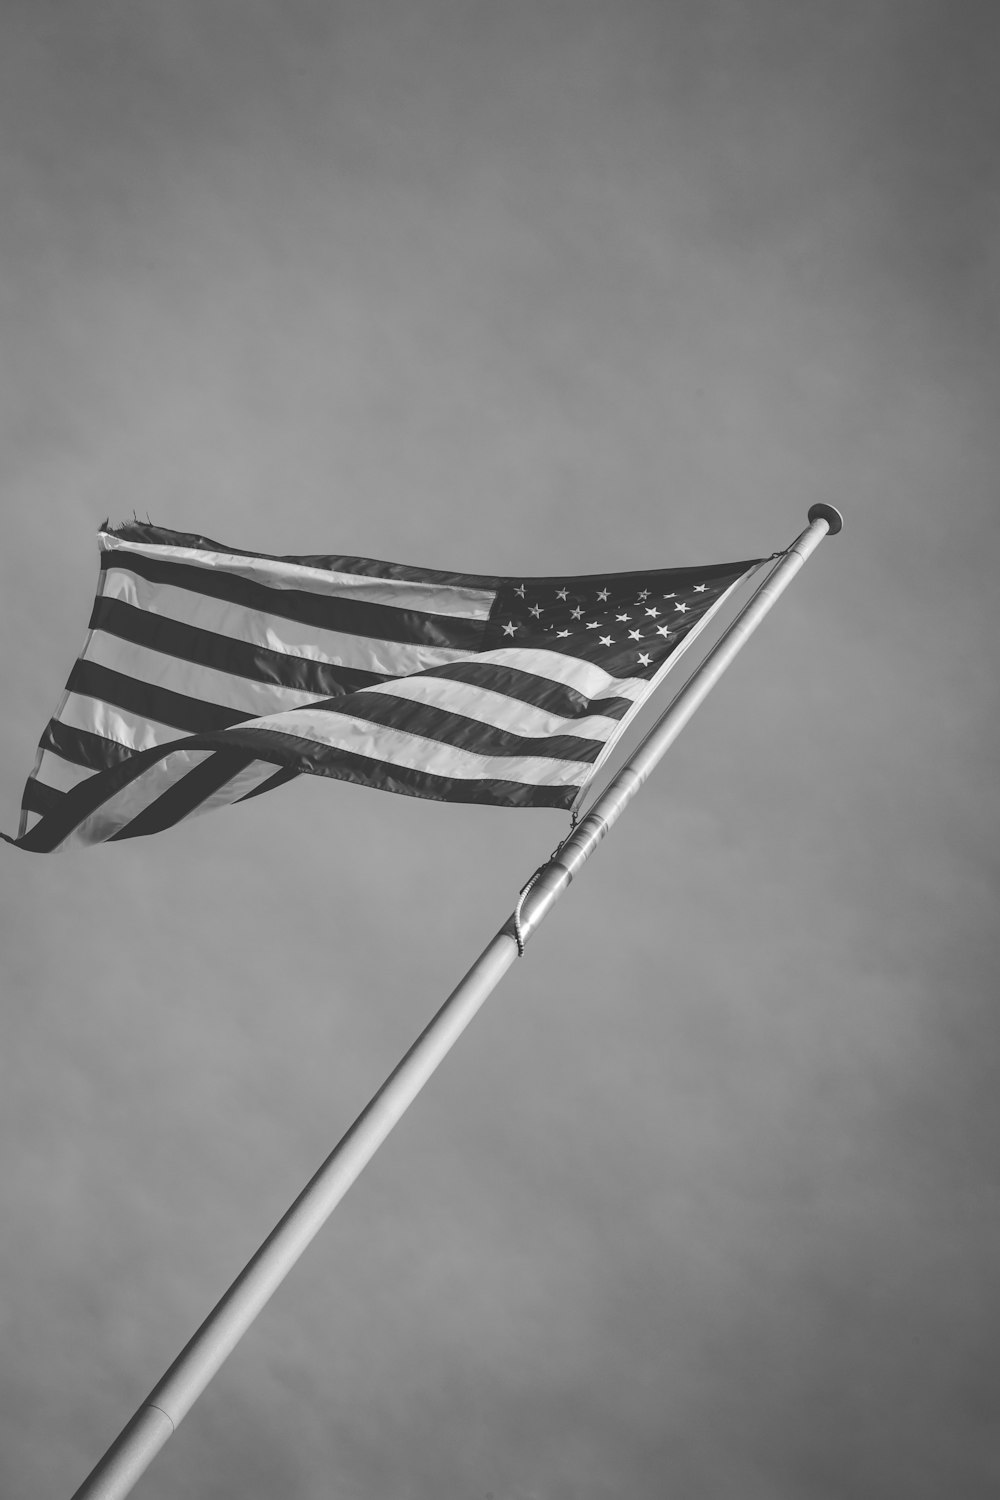 USA flag grayscale photography